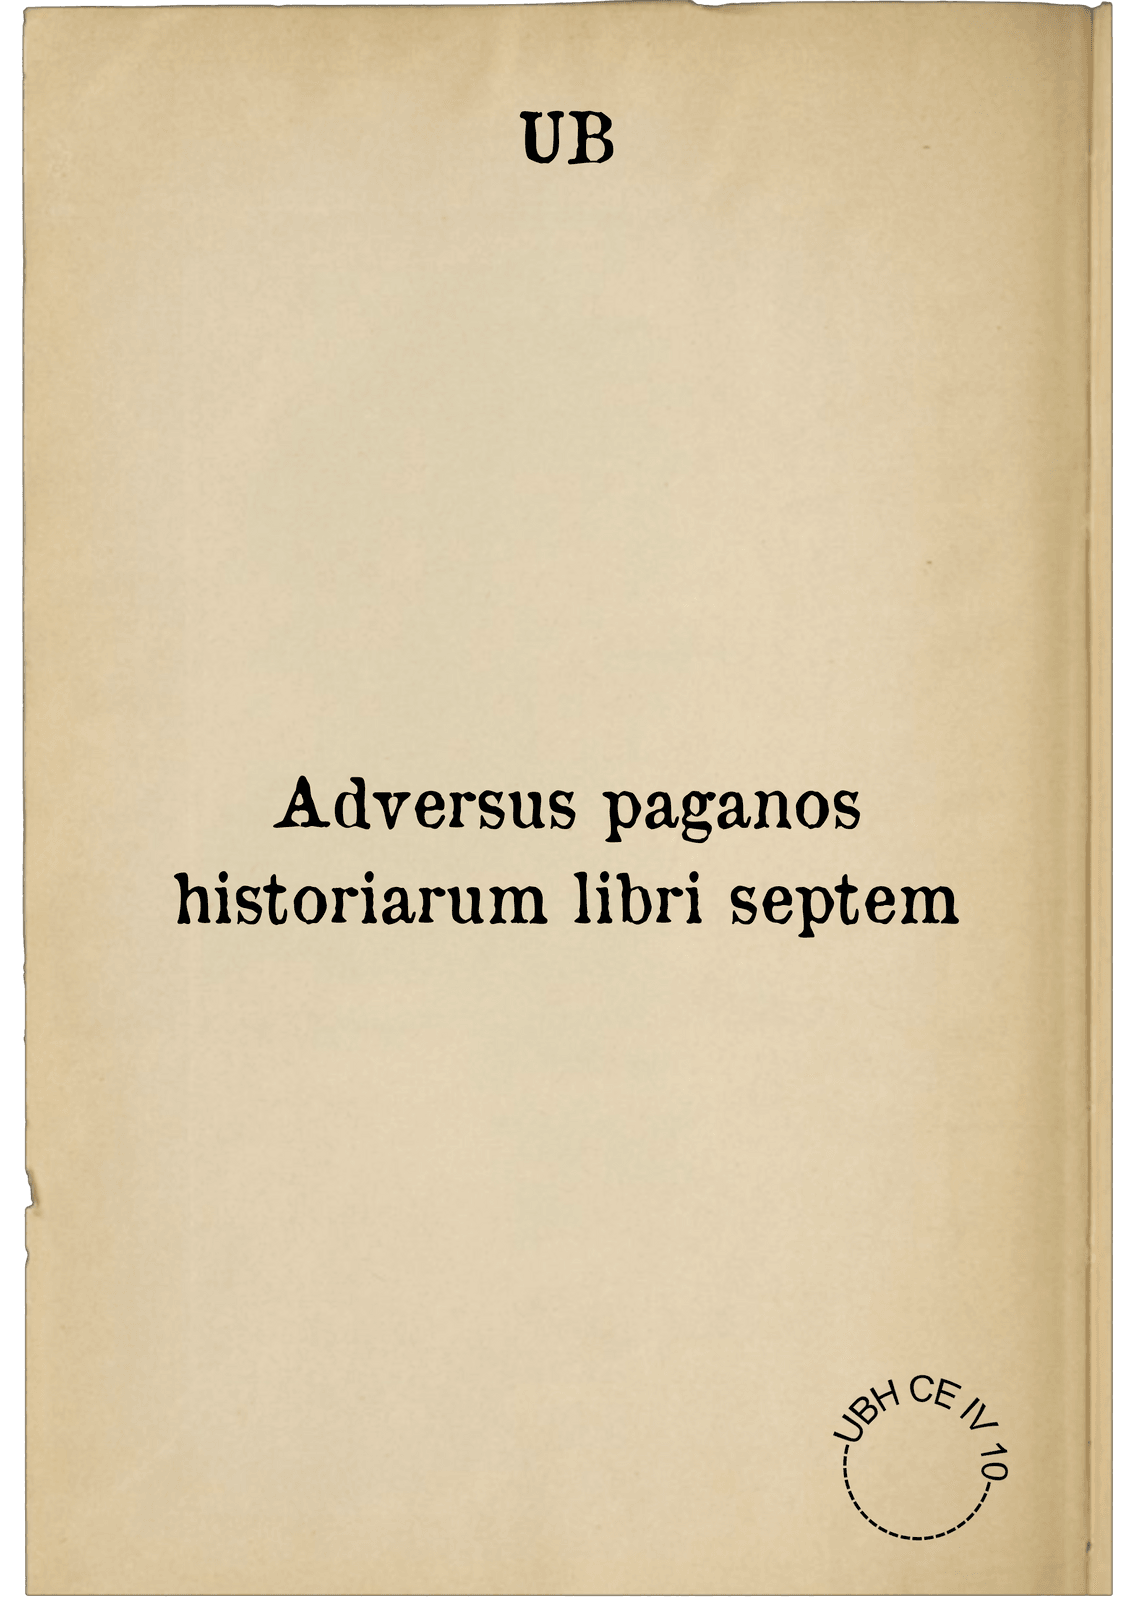 Adversus paganos historiarum libri septem